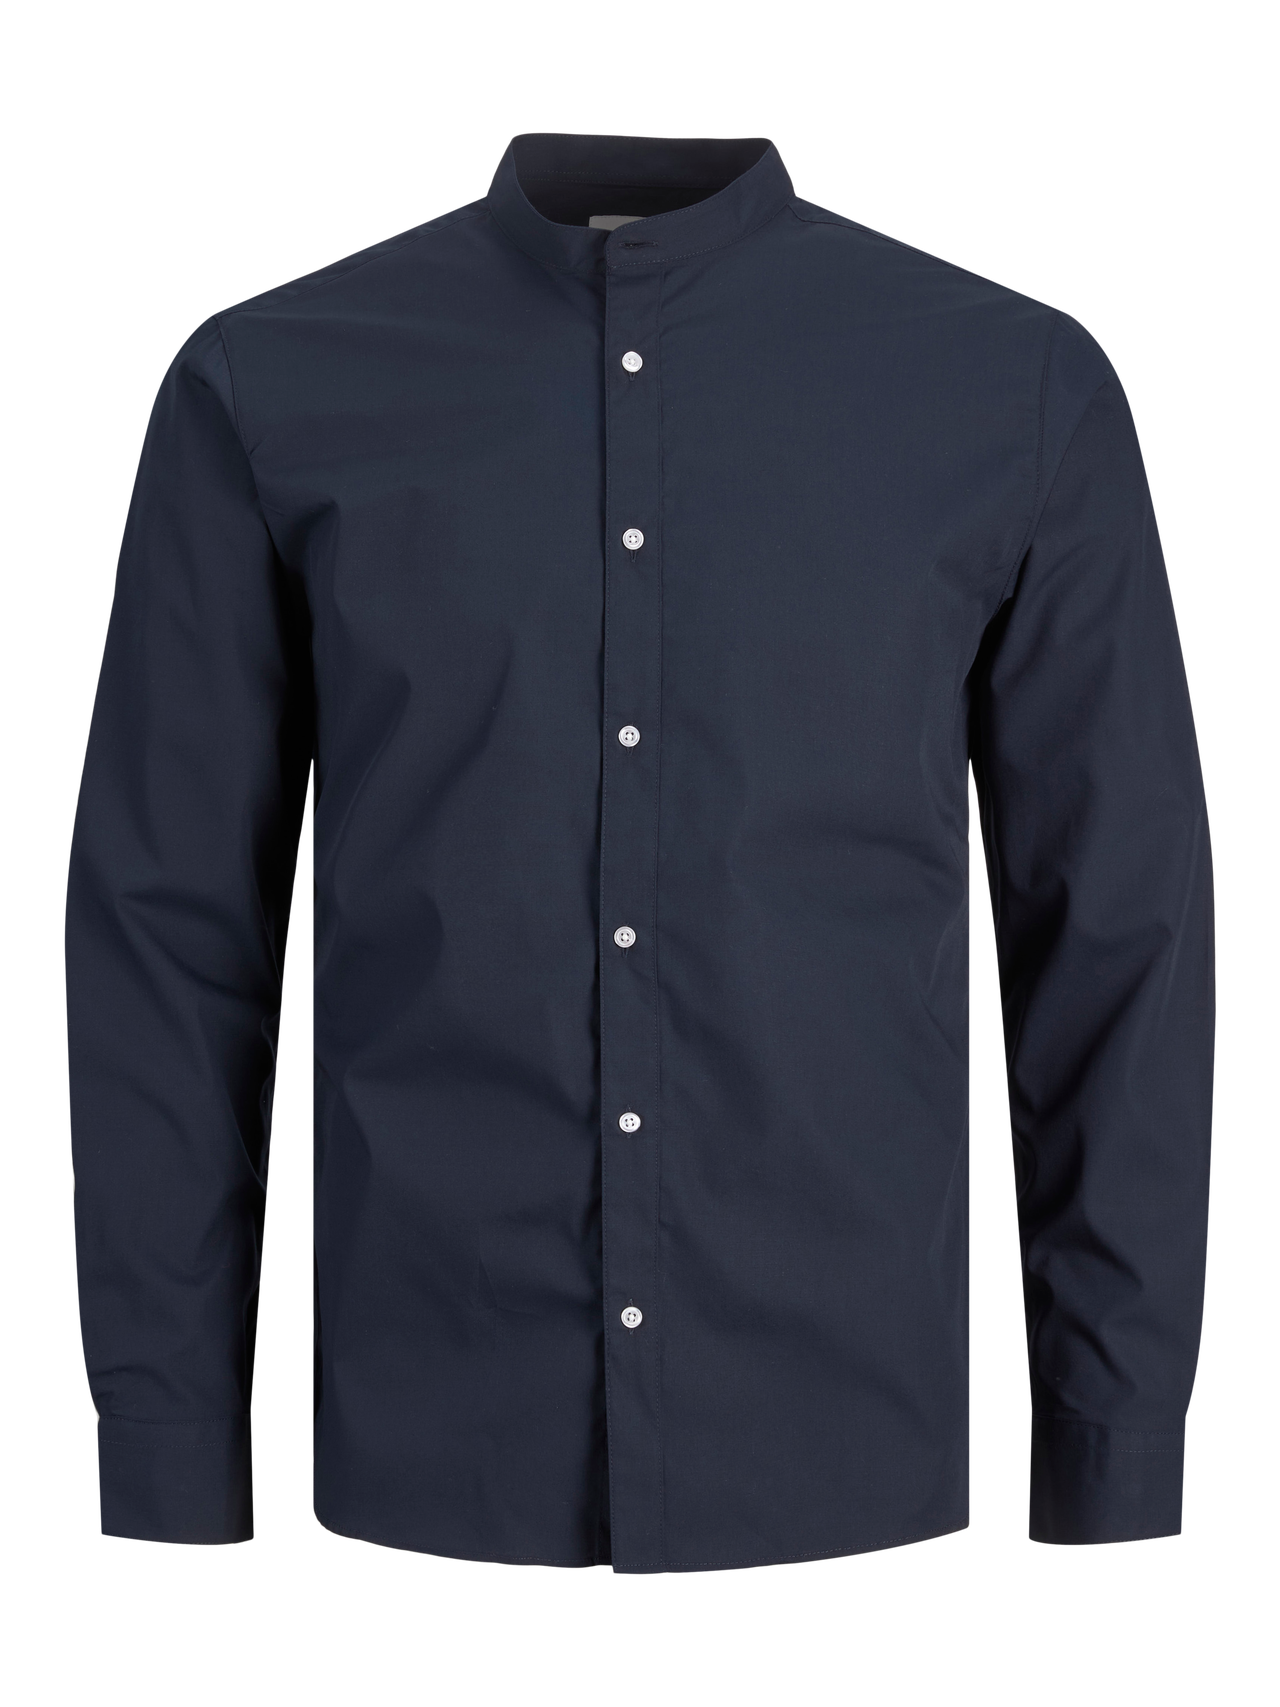 Jack & Jones Slim Fit Avslappnad skjorta -Navy Blazer - 12205921